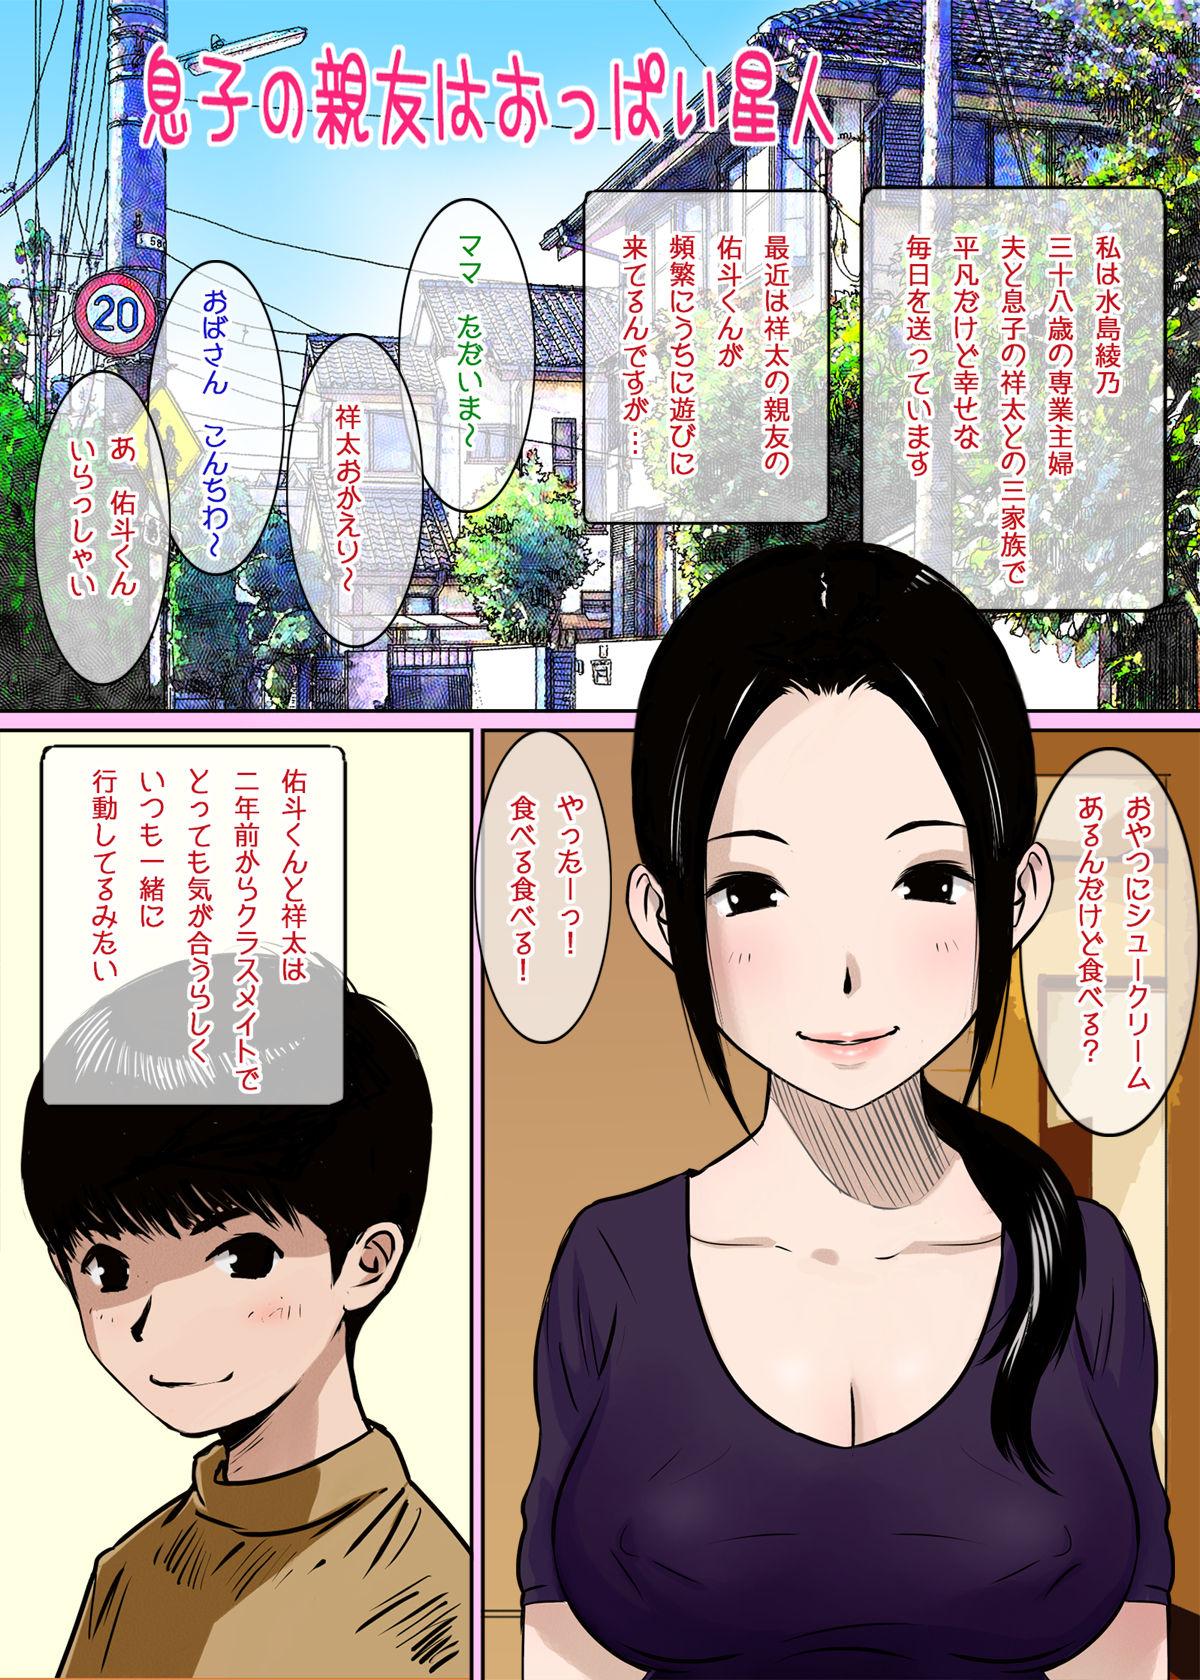 Gang Musuko no Shinyuu wa Oppai Seijin Cartoon - Picture 1